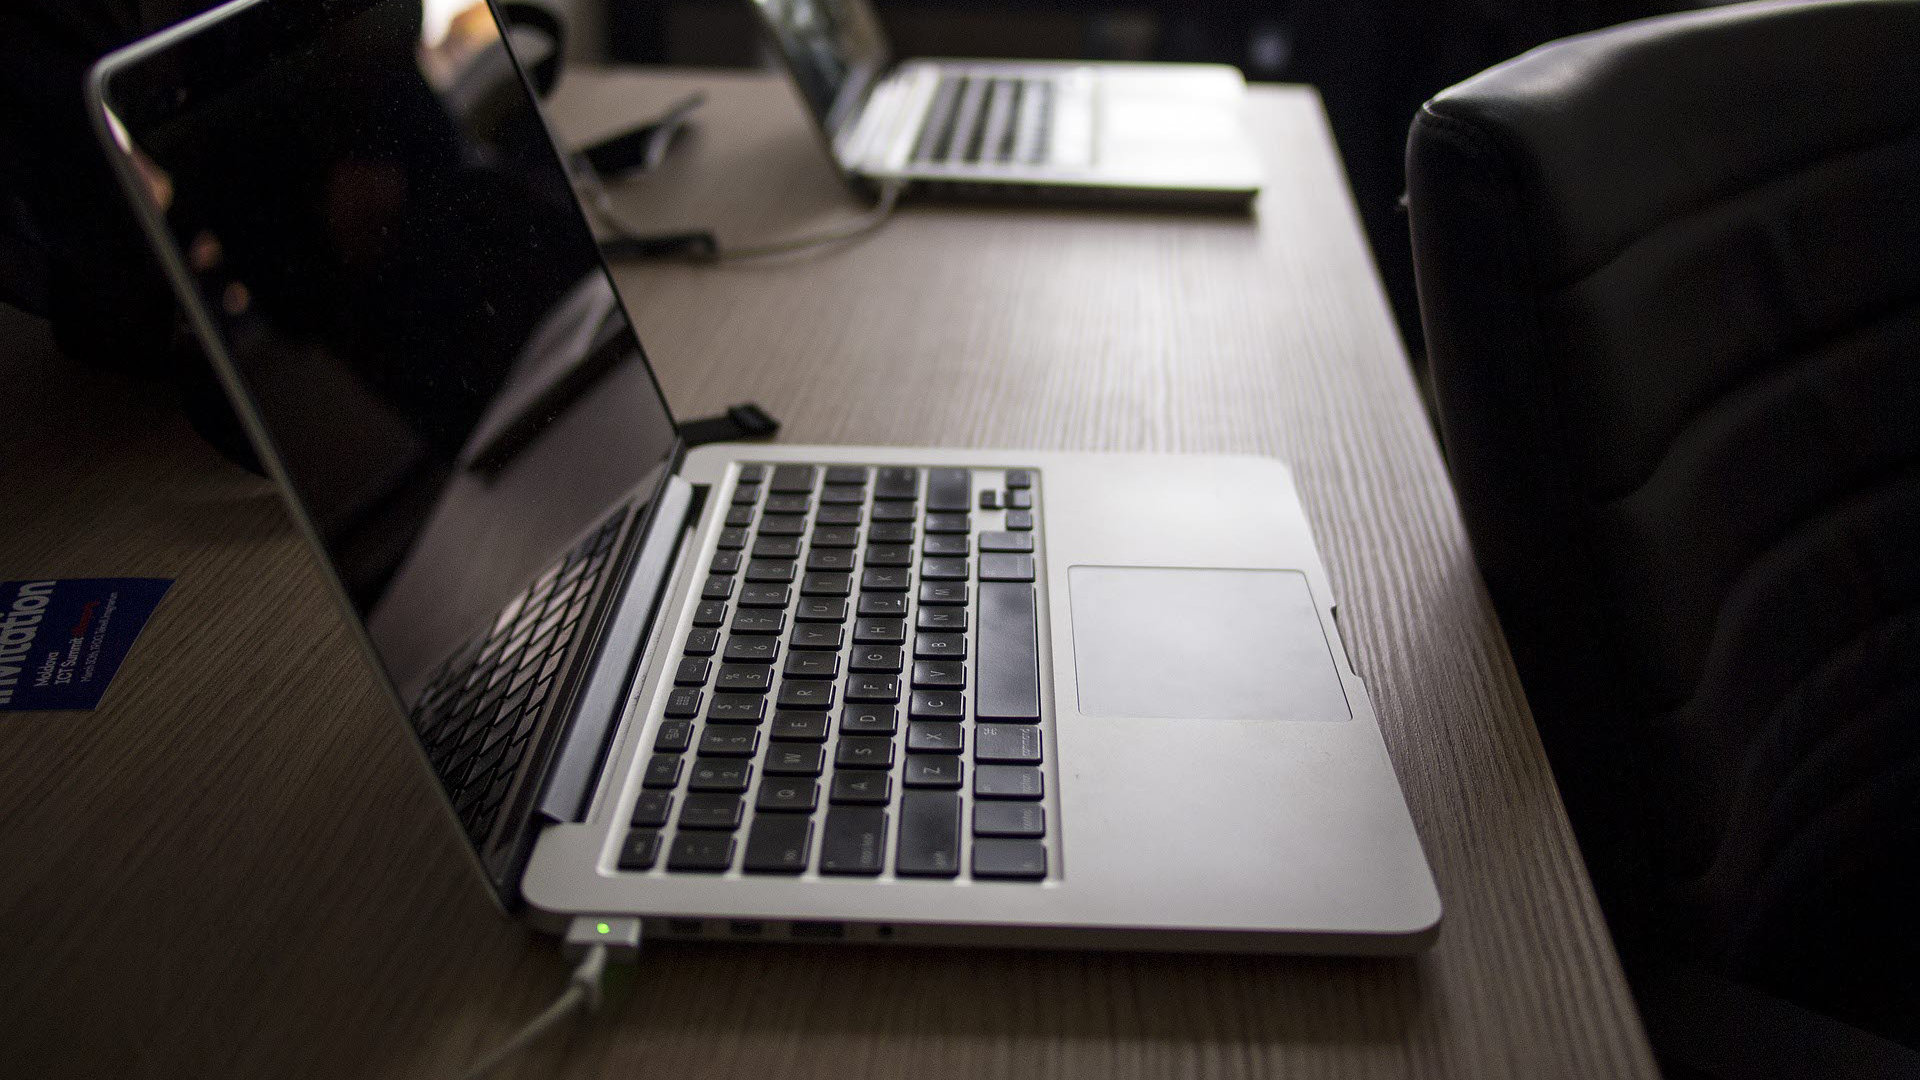 laptops-on-a-desk